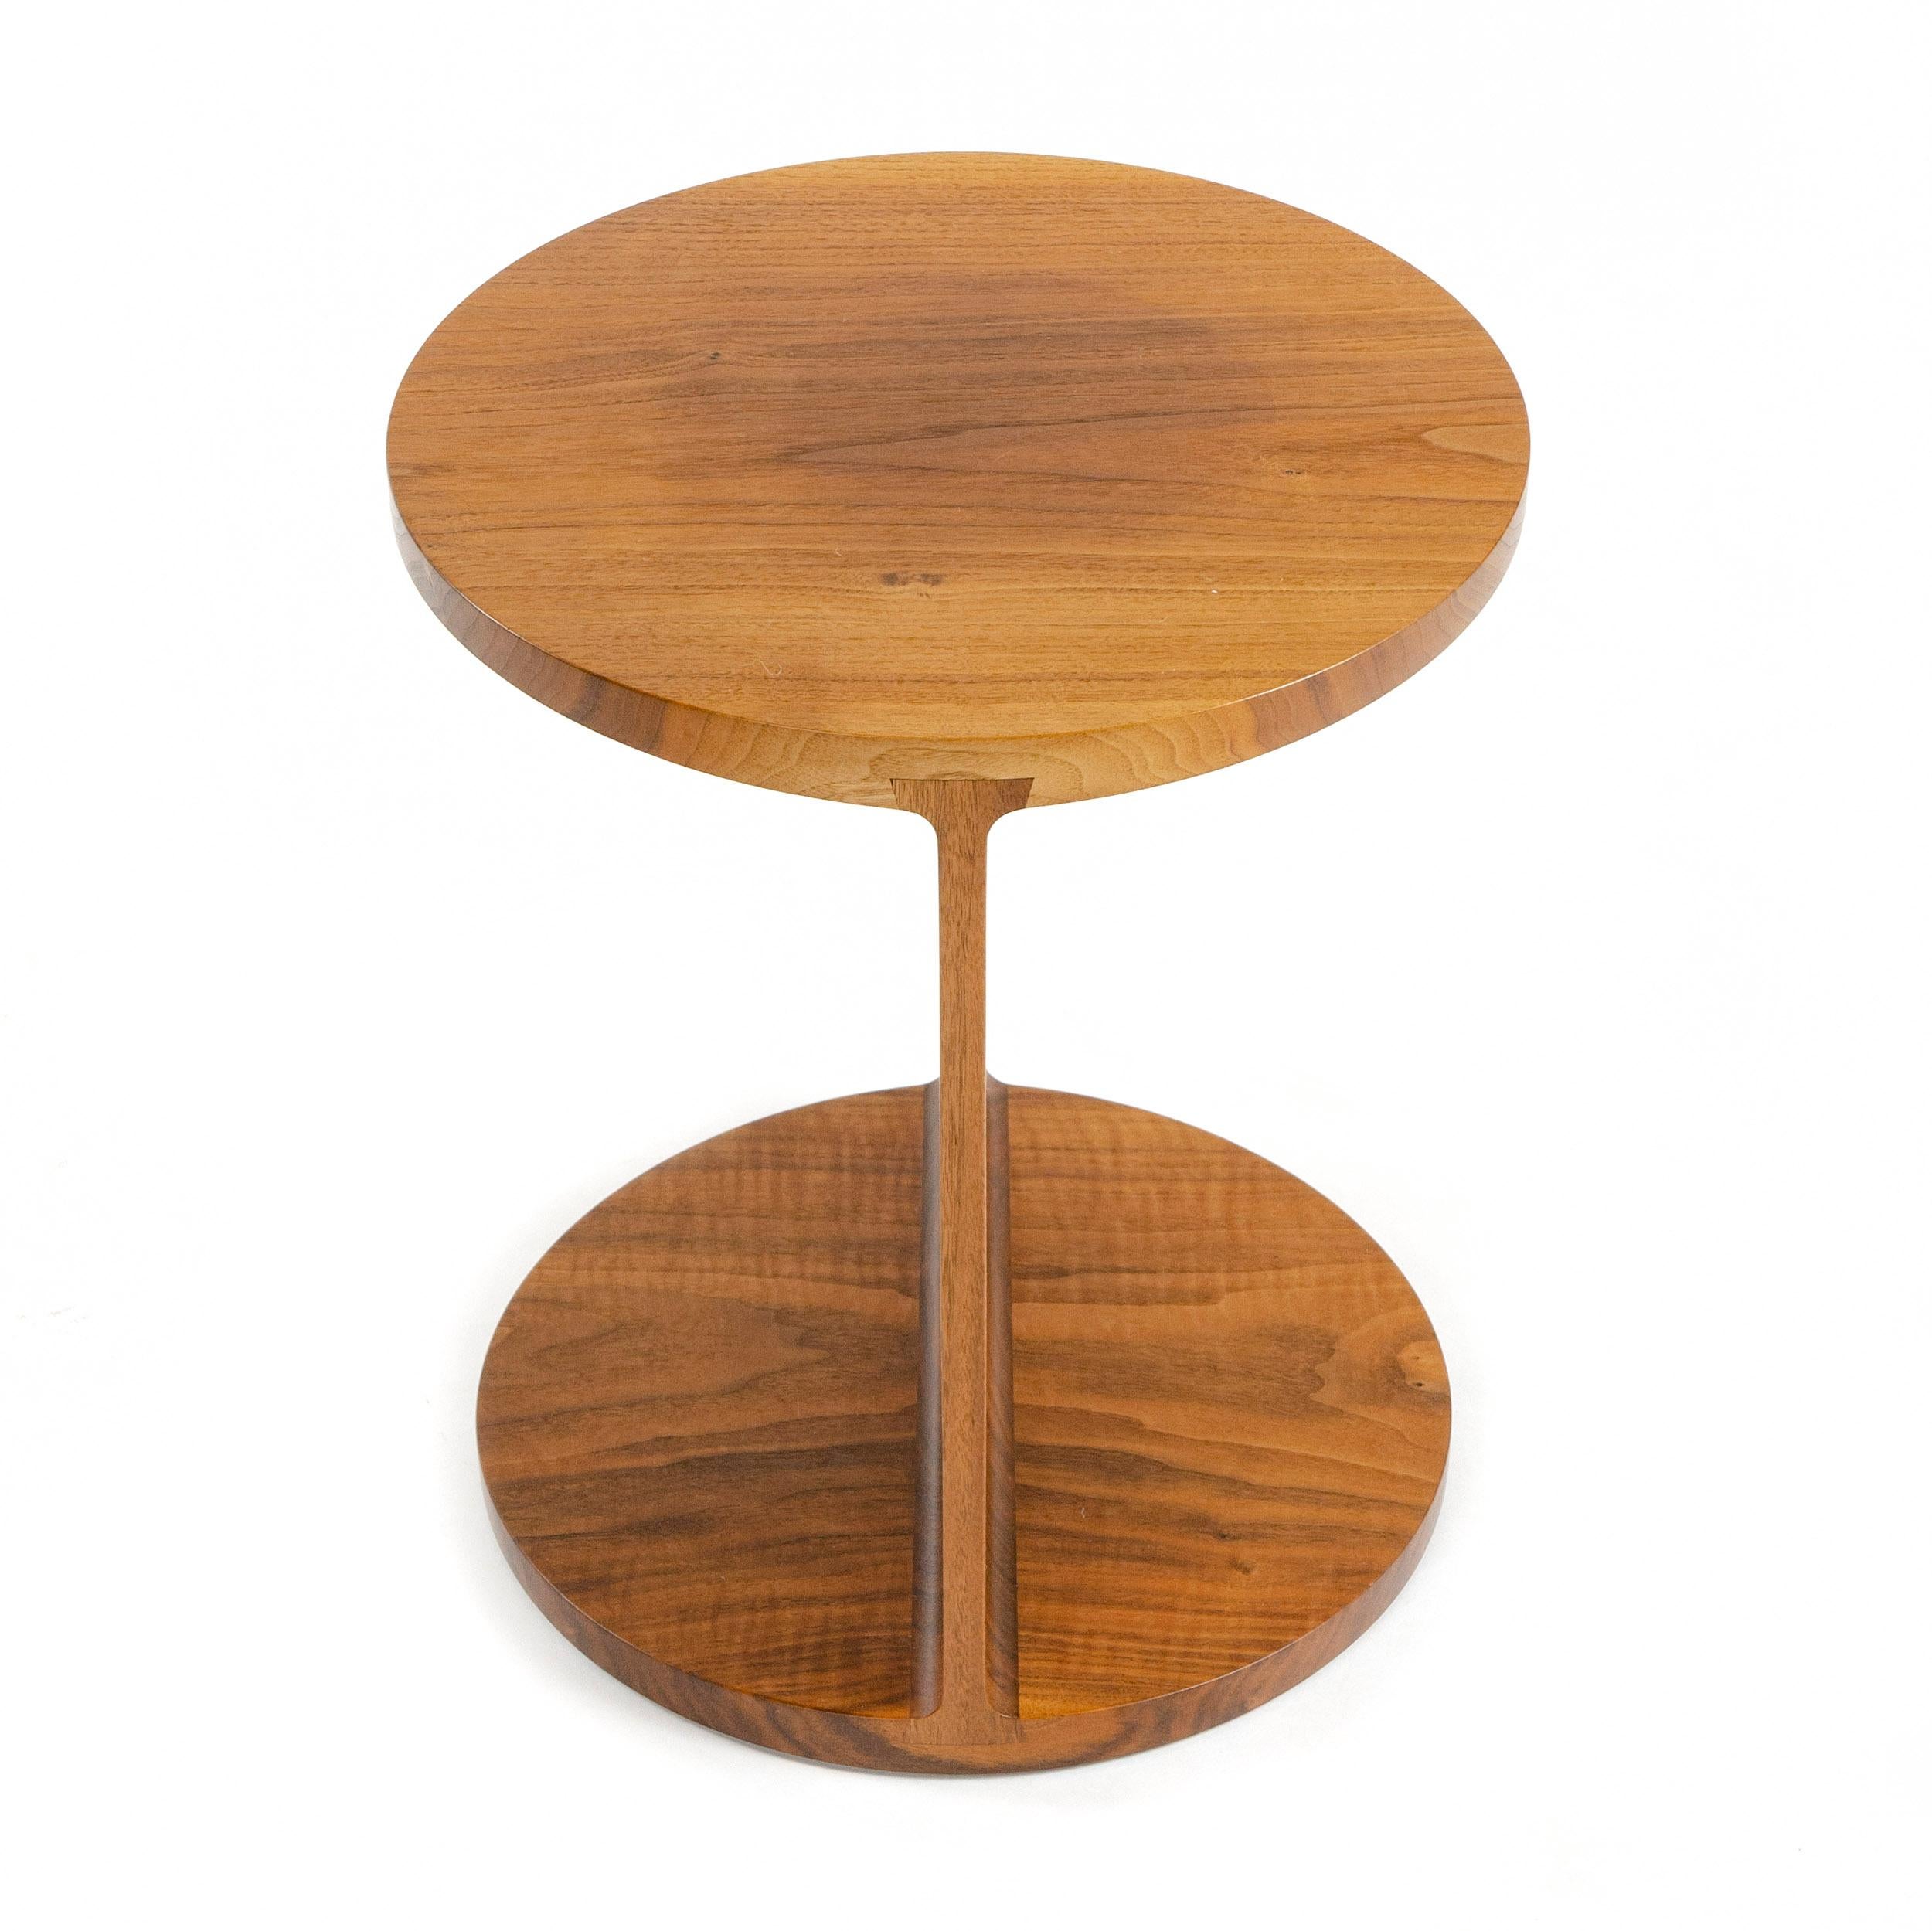 A Wyeth original round walnut I-beam side or end table.